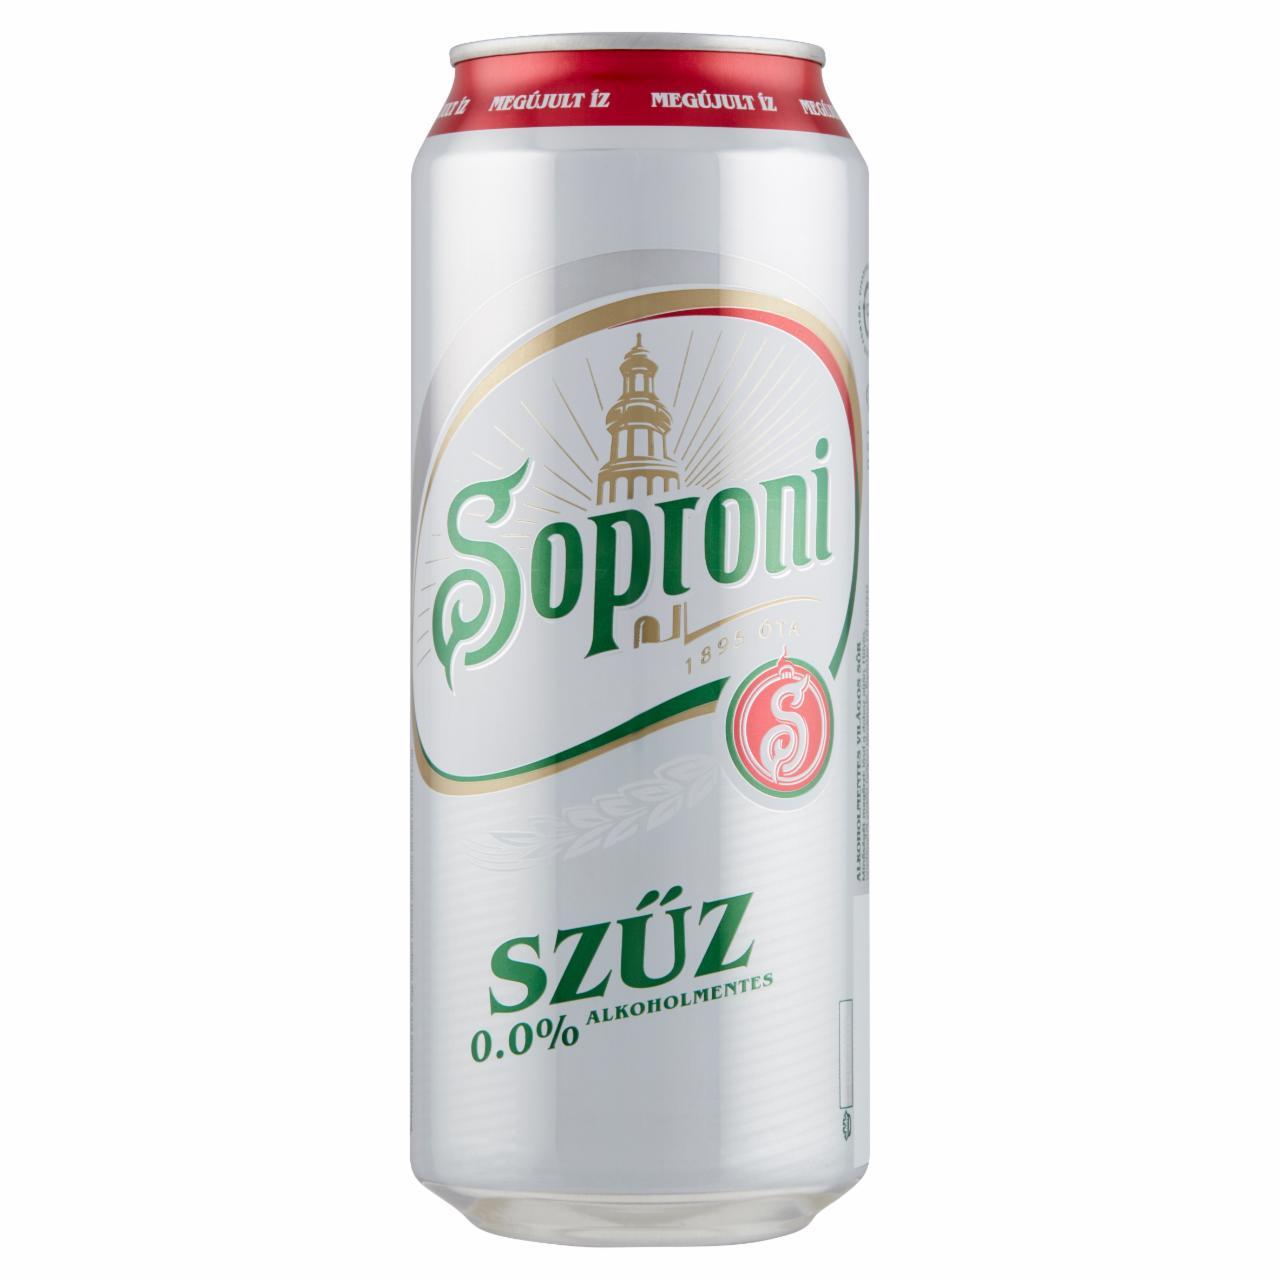 Képek - Soproni Szűz alkoholmentes világos sör 0,5 l doboz